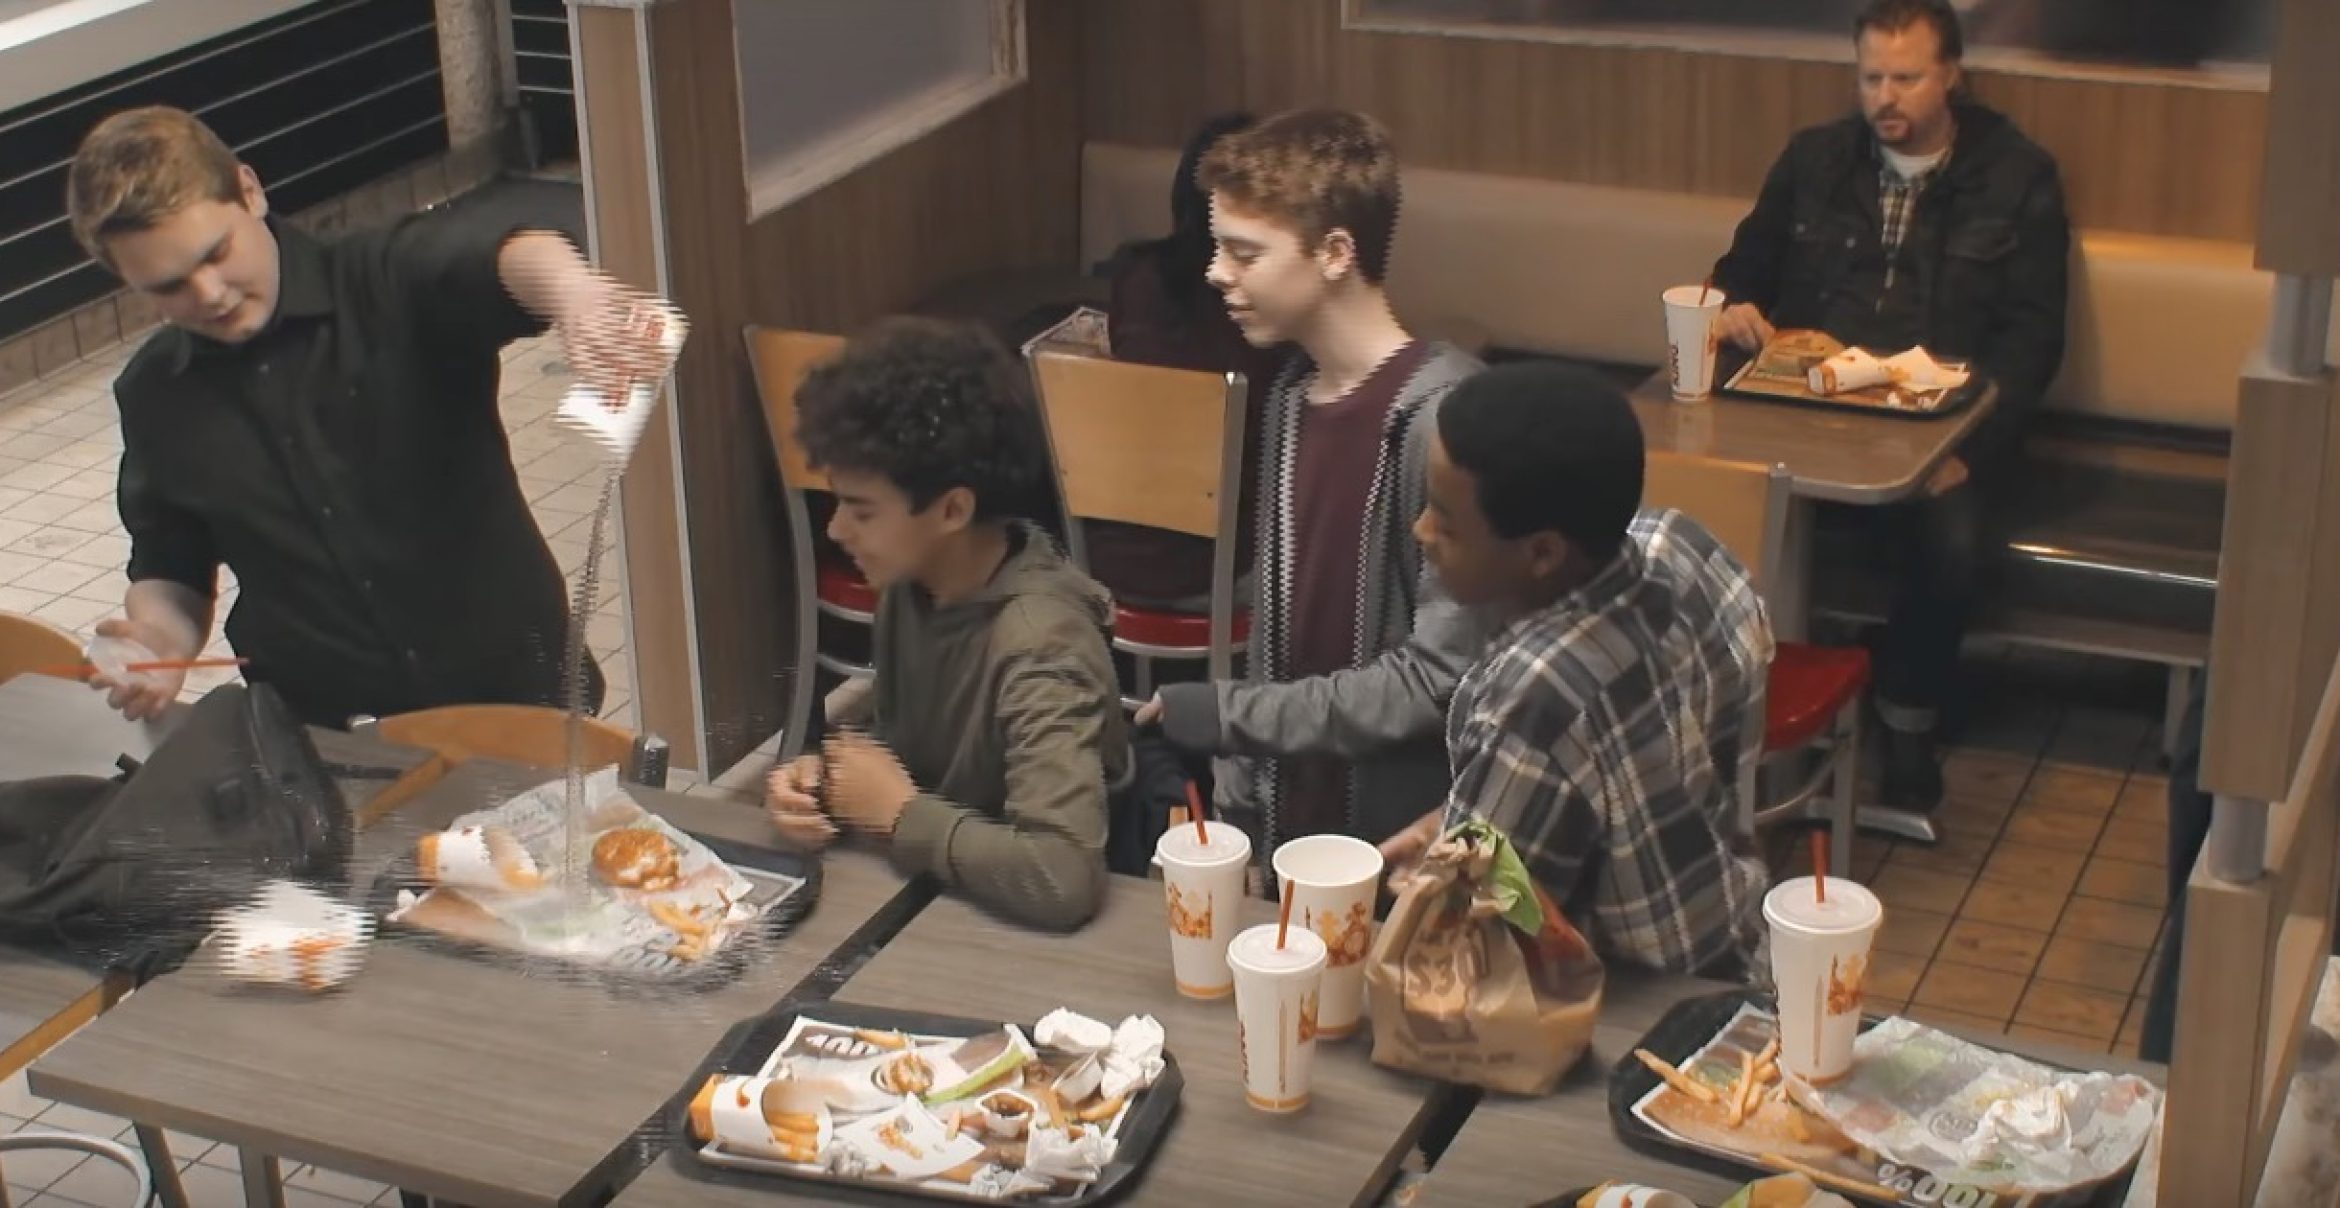 Mit dieser Kampagne setzt sich Burger King gegen Mobbing ein